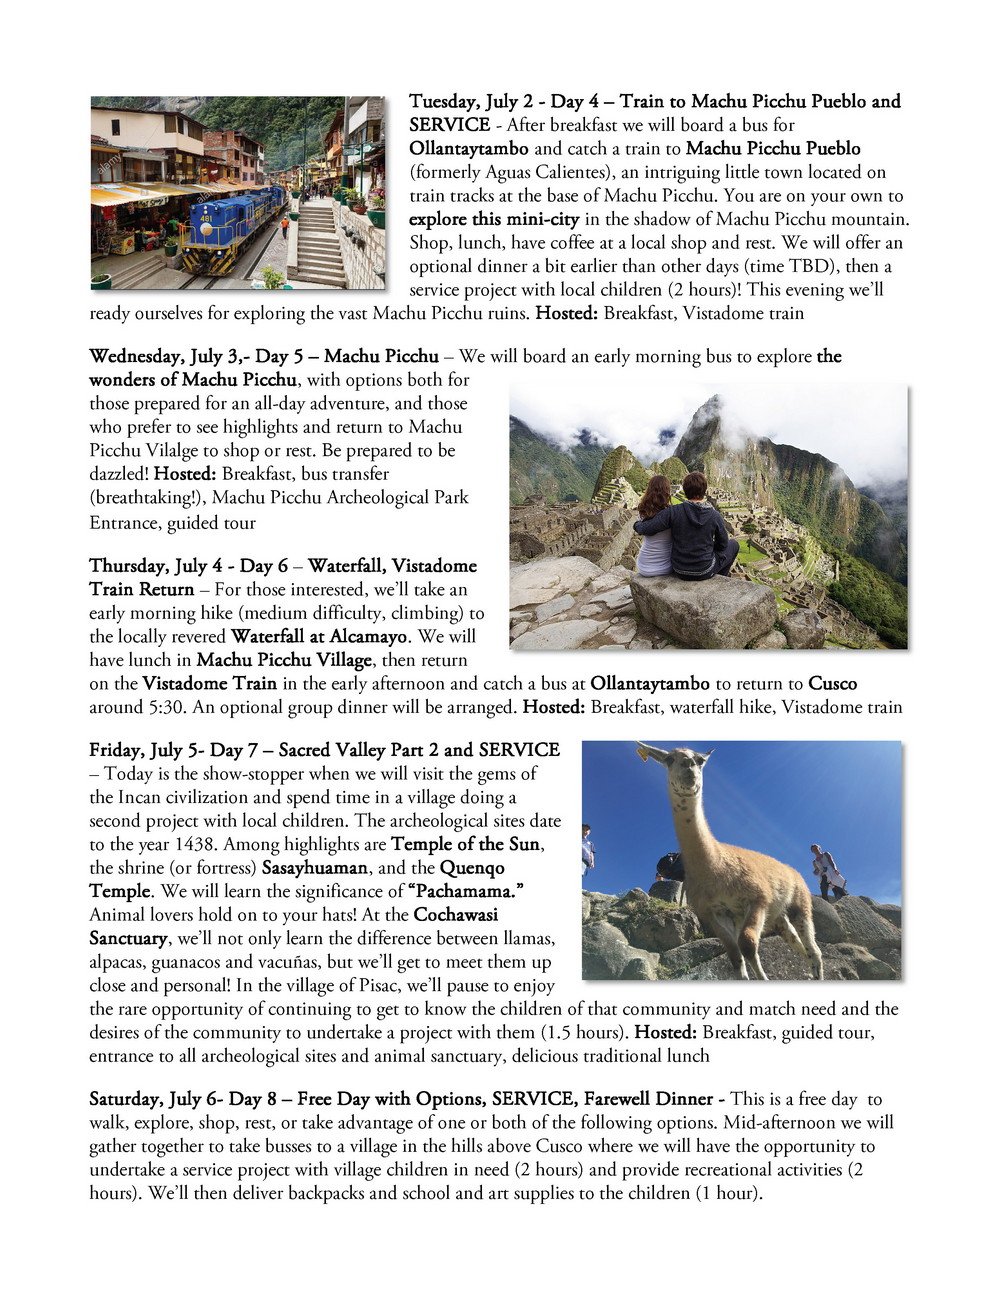 Machu Picchu Page 4